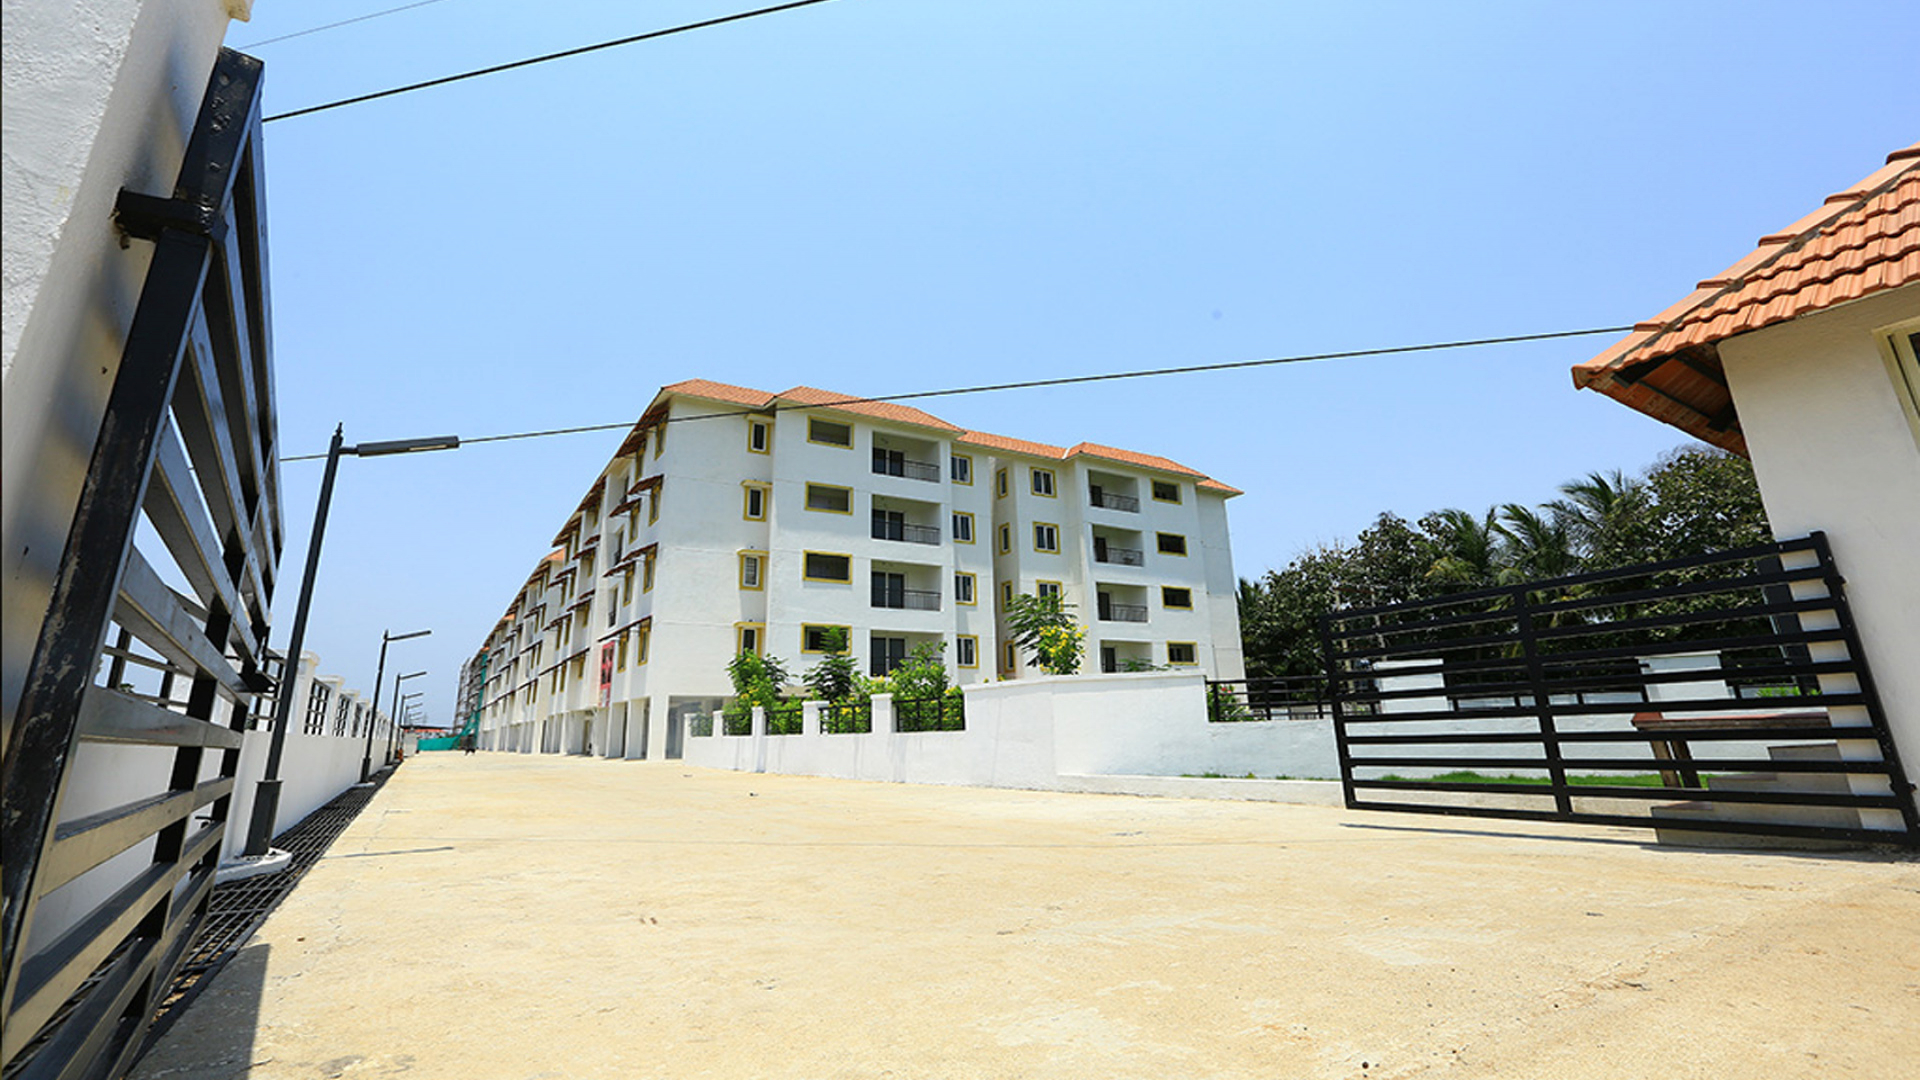 2, 3 BHK Apartment for sale in Sriperumbudur